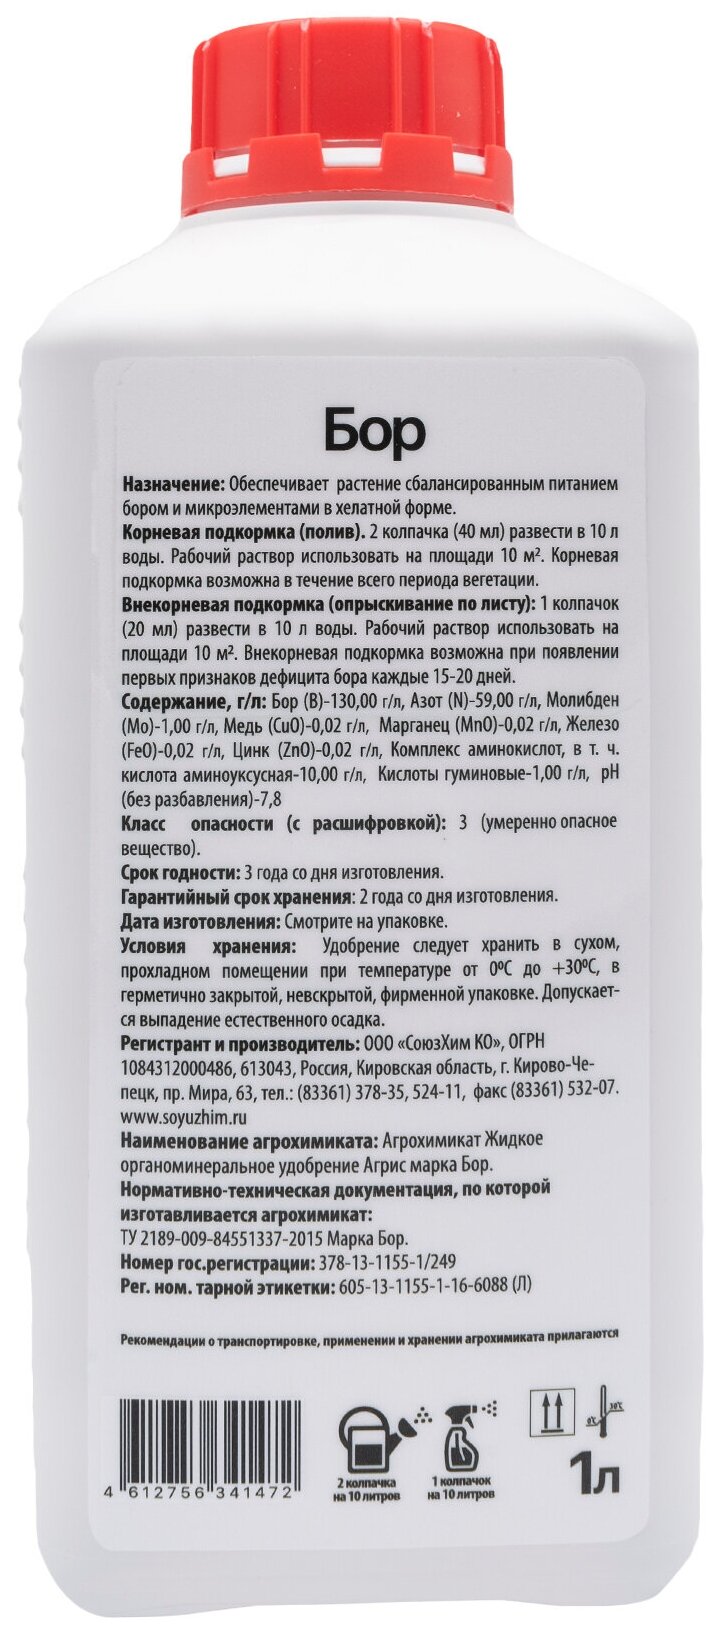 Жидкое органоминеральное удобрение "Агрис" марка "Бор", 1л - фотография № 1